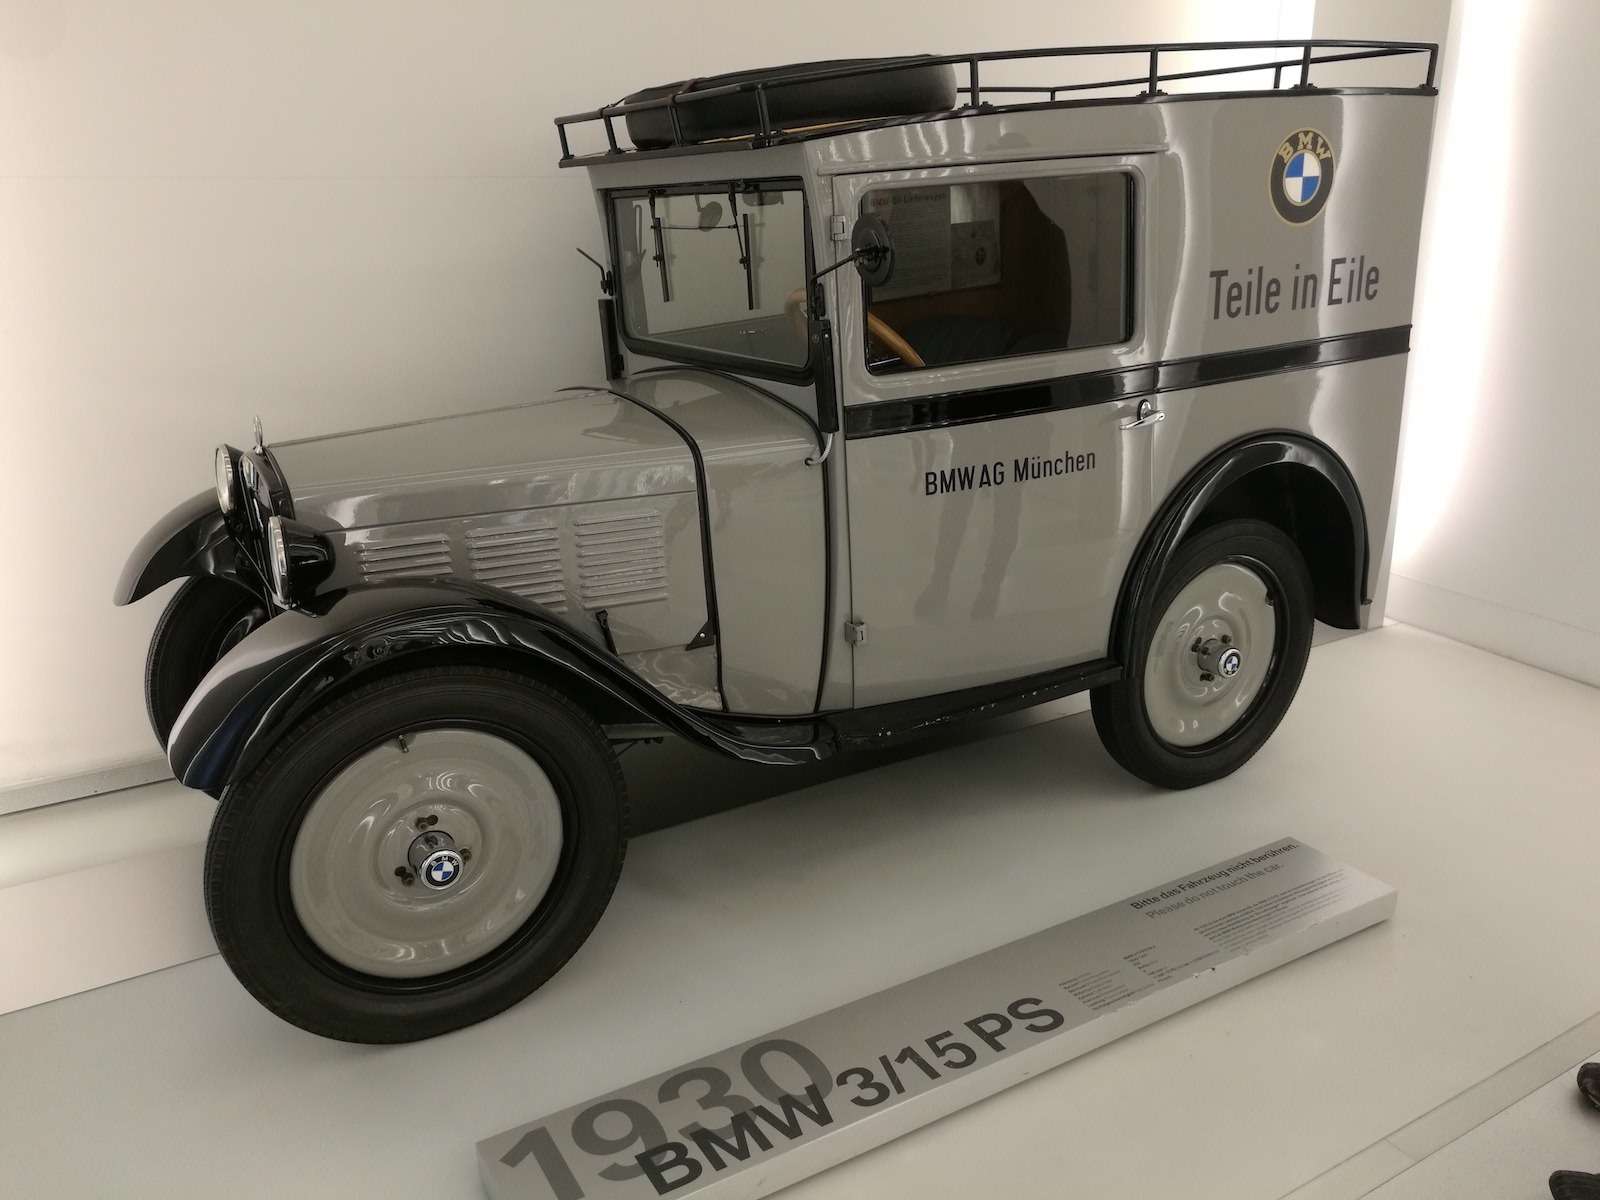 В модели BMW 3/15 PS DA2 (1930-1931) немецкий производитель отказался от использования Dixi в названии. Кузов двухдверки был изготовлен из листовой стали, а 4-цилиндровый 750-кубовый мотор выдавал 15 л.с. В рекламных листовках можно было прочитать: «Внутри больше, чем снаружи!». Постепенно 3/15 позволил европейцам понять, что передвигаться на автомобиле дешевле, чем на поезде.